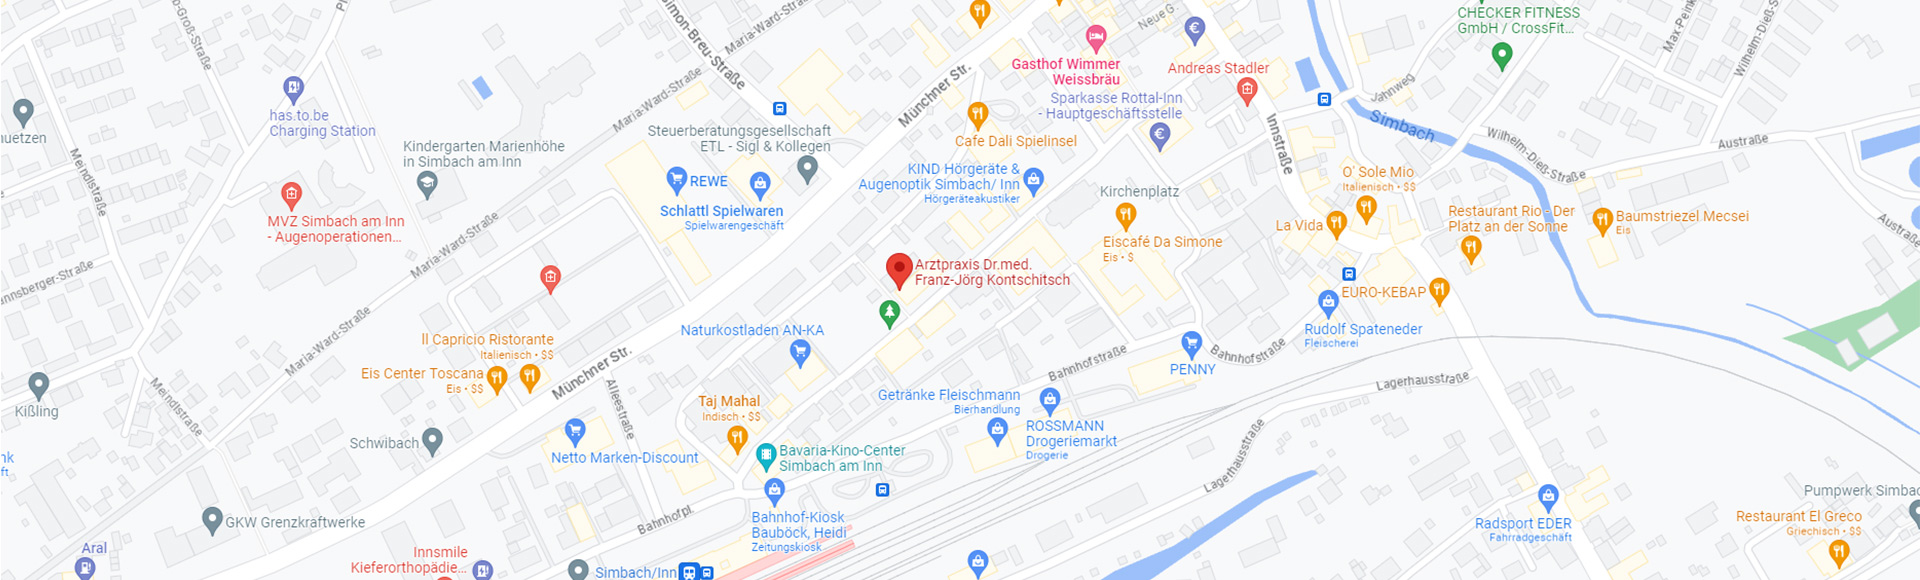 kontschitsch_google_maps